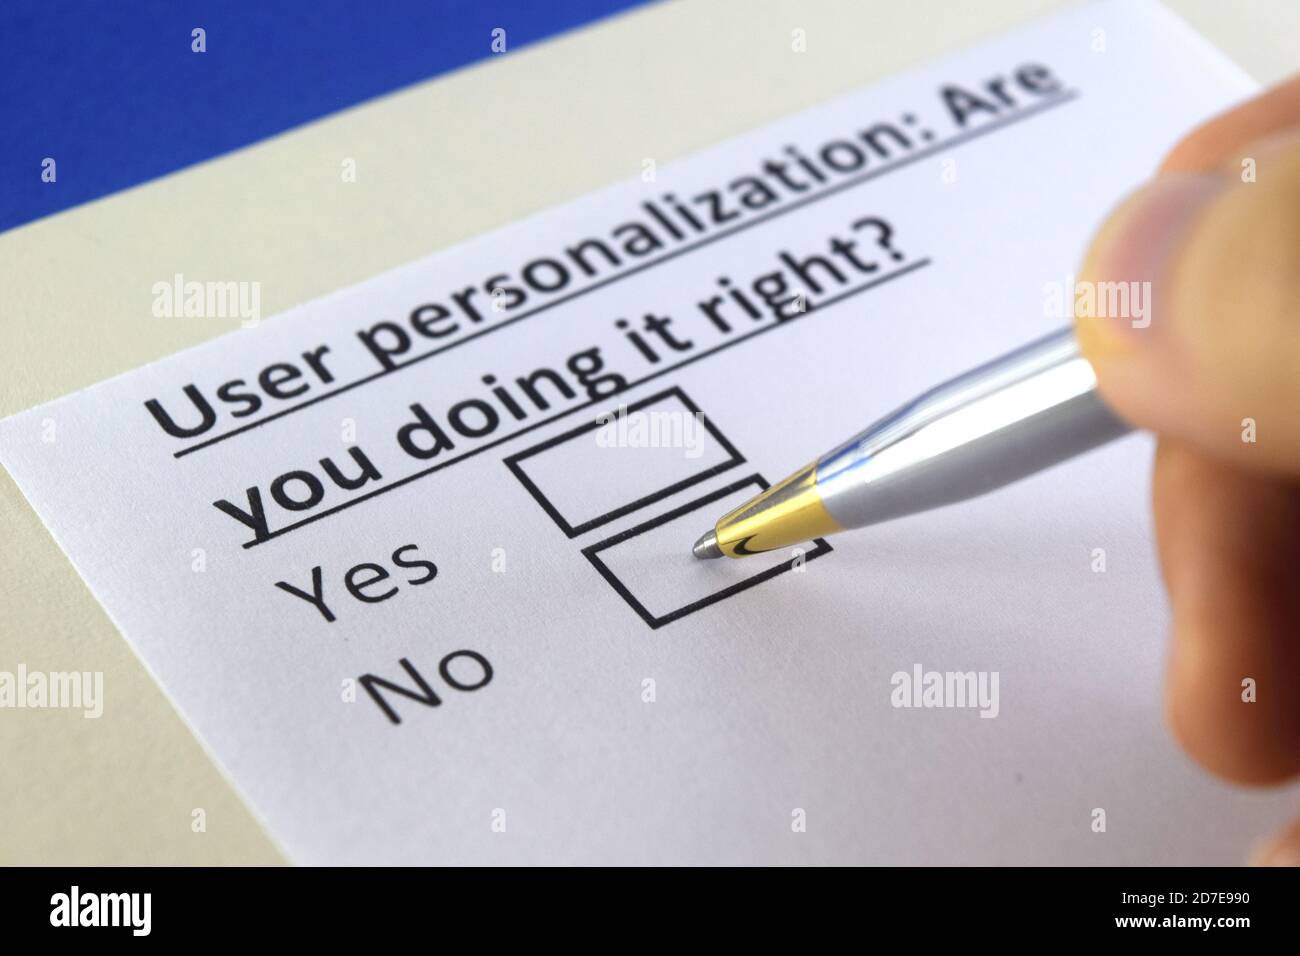 Eine Person beantwortet Fragen zur Personalisierung von Benutzern. Stockfoto